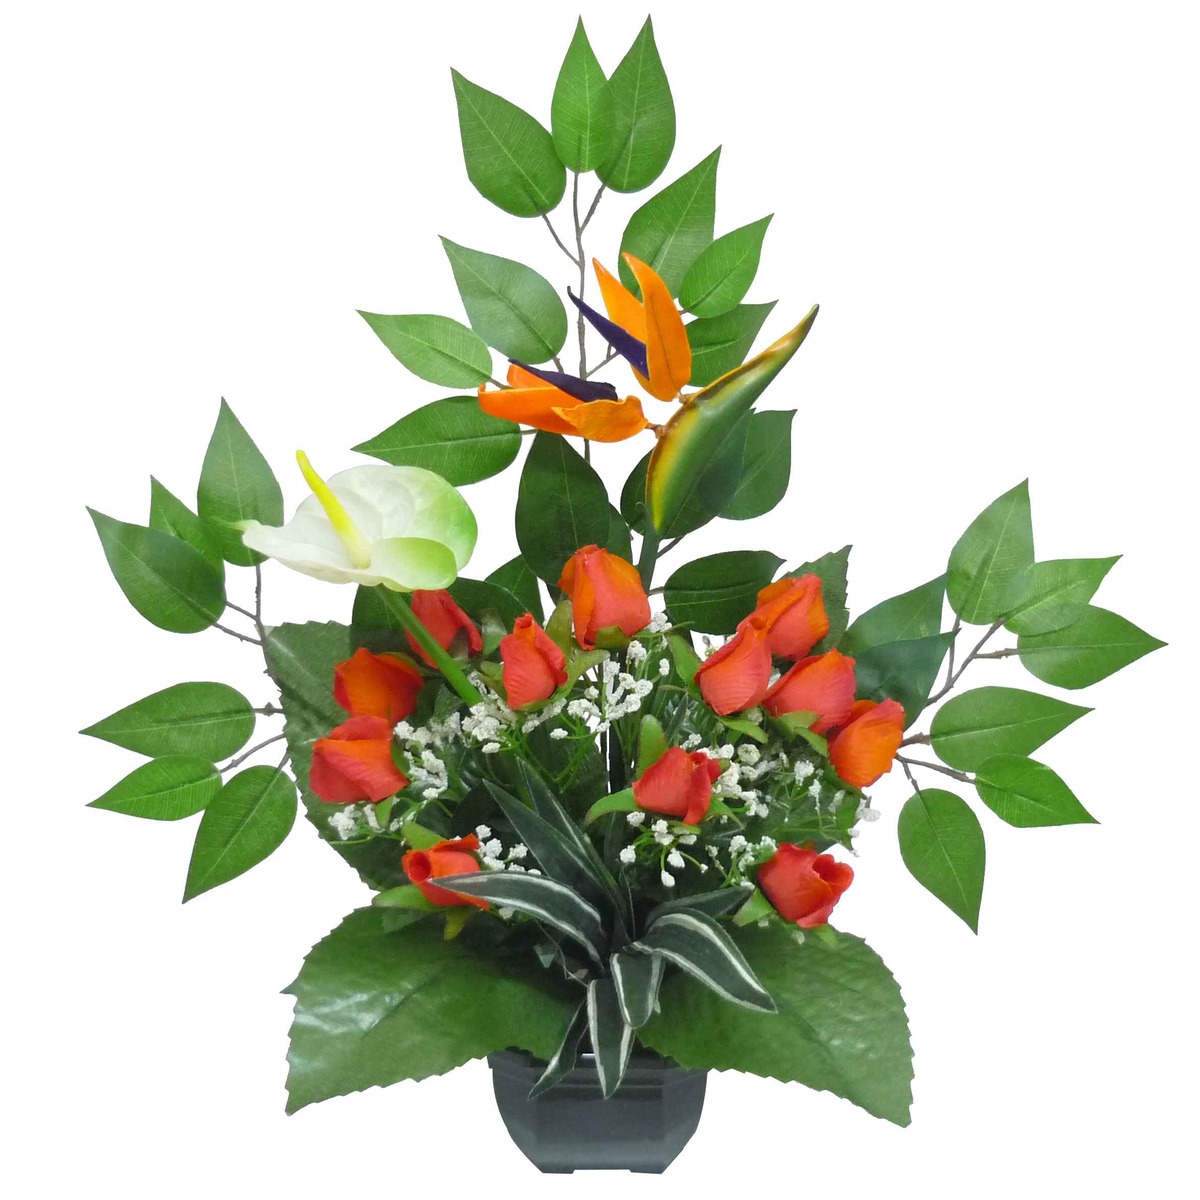 Coupe roses + strelitzias + anthuriums - Hauteur 53 cm - Orange, vert